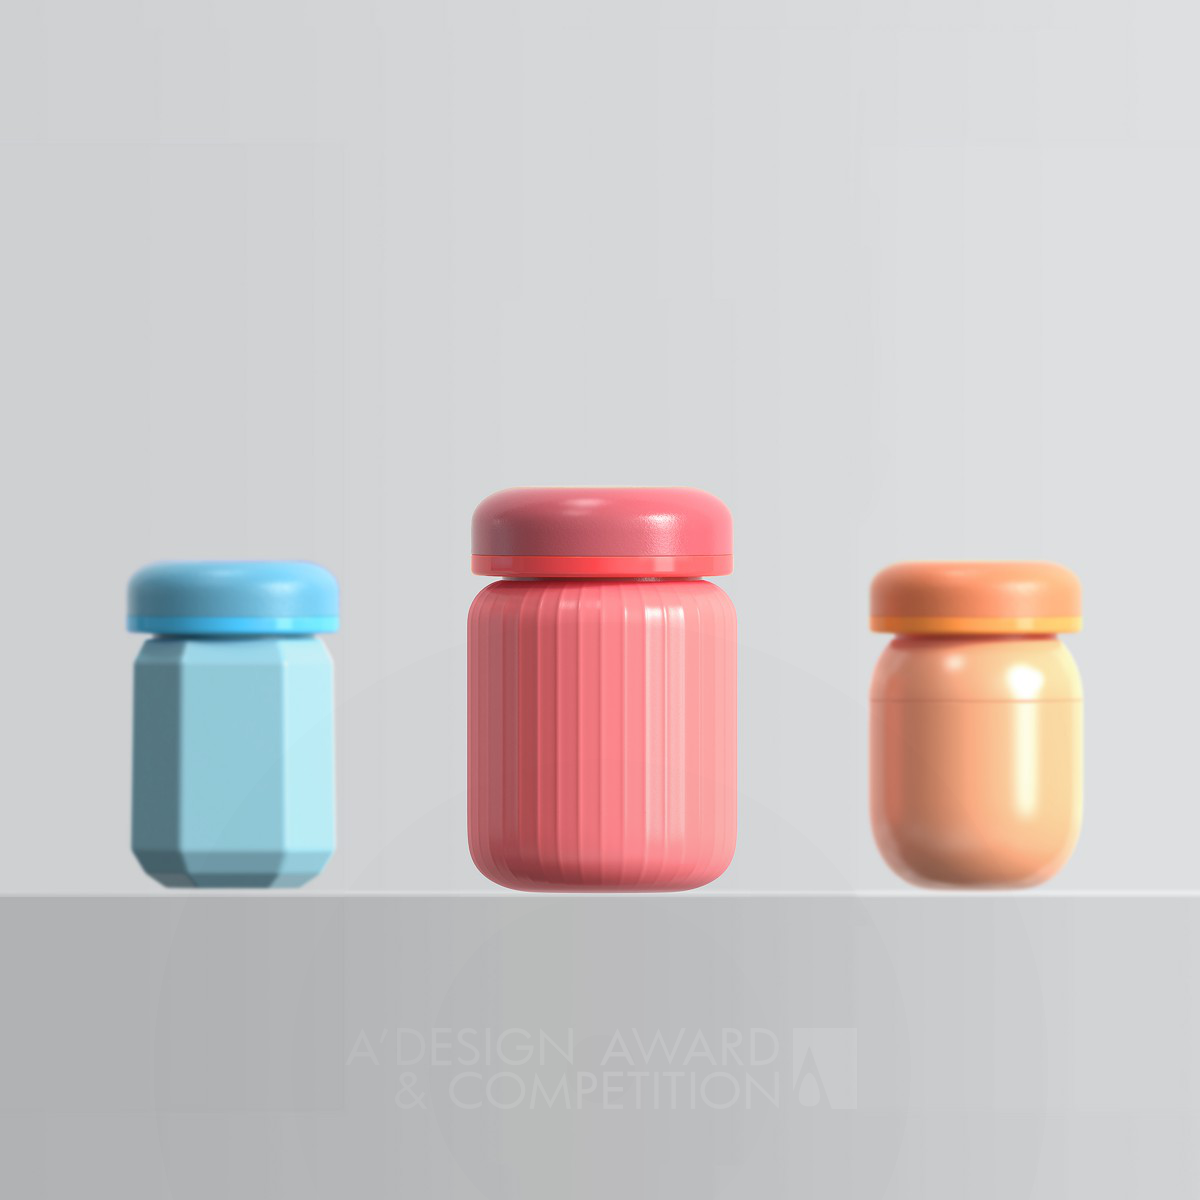 The Sweety Candy Jar by Yi Qi & Chen XuanZuo